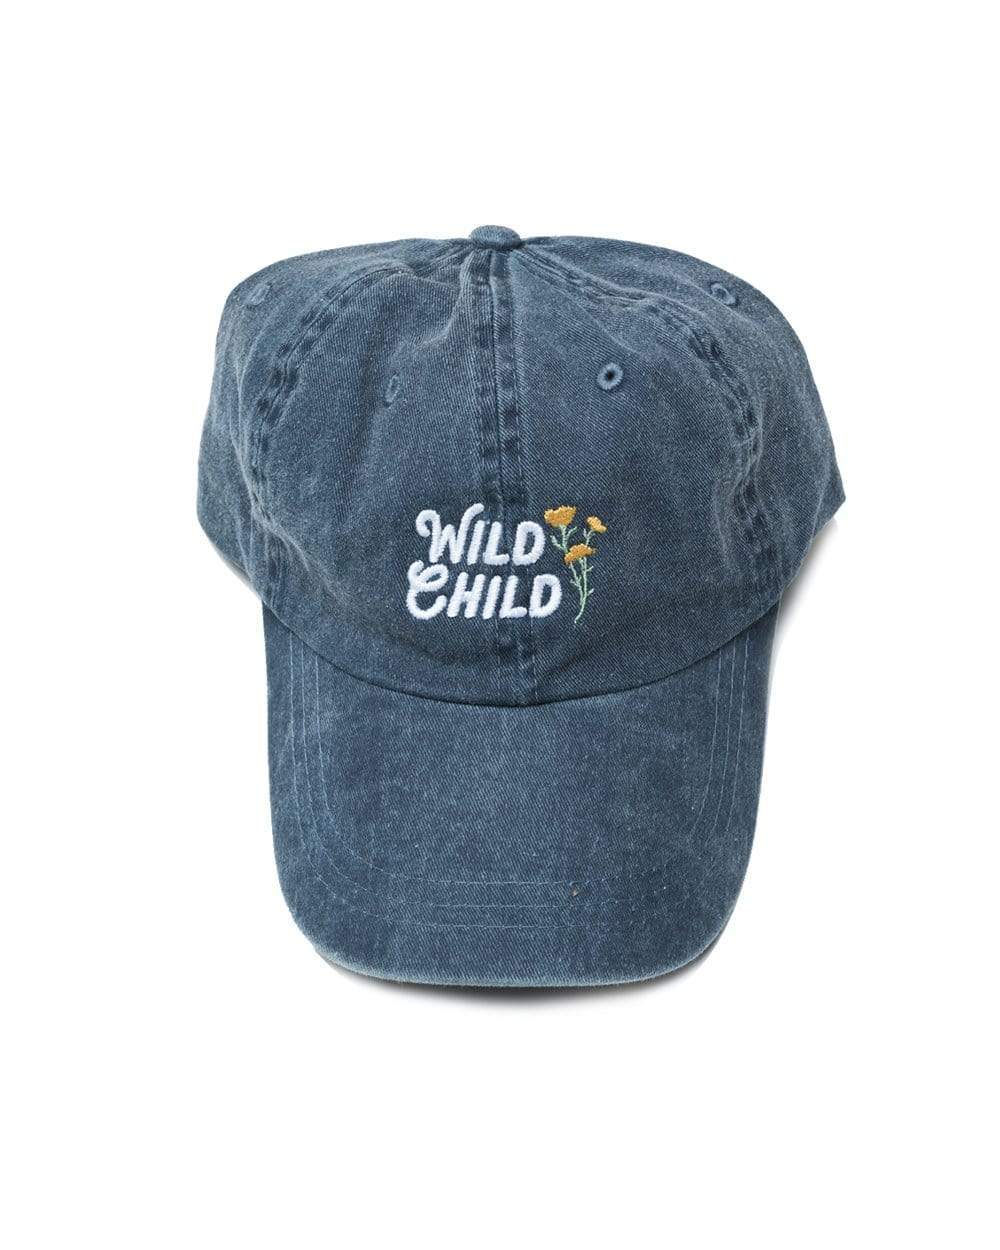 Wild Child Dad Hat